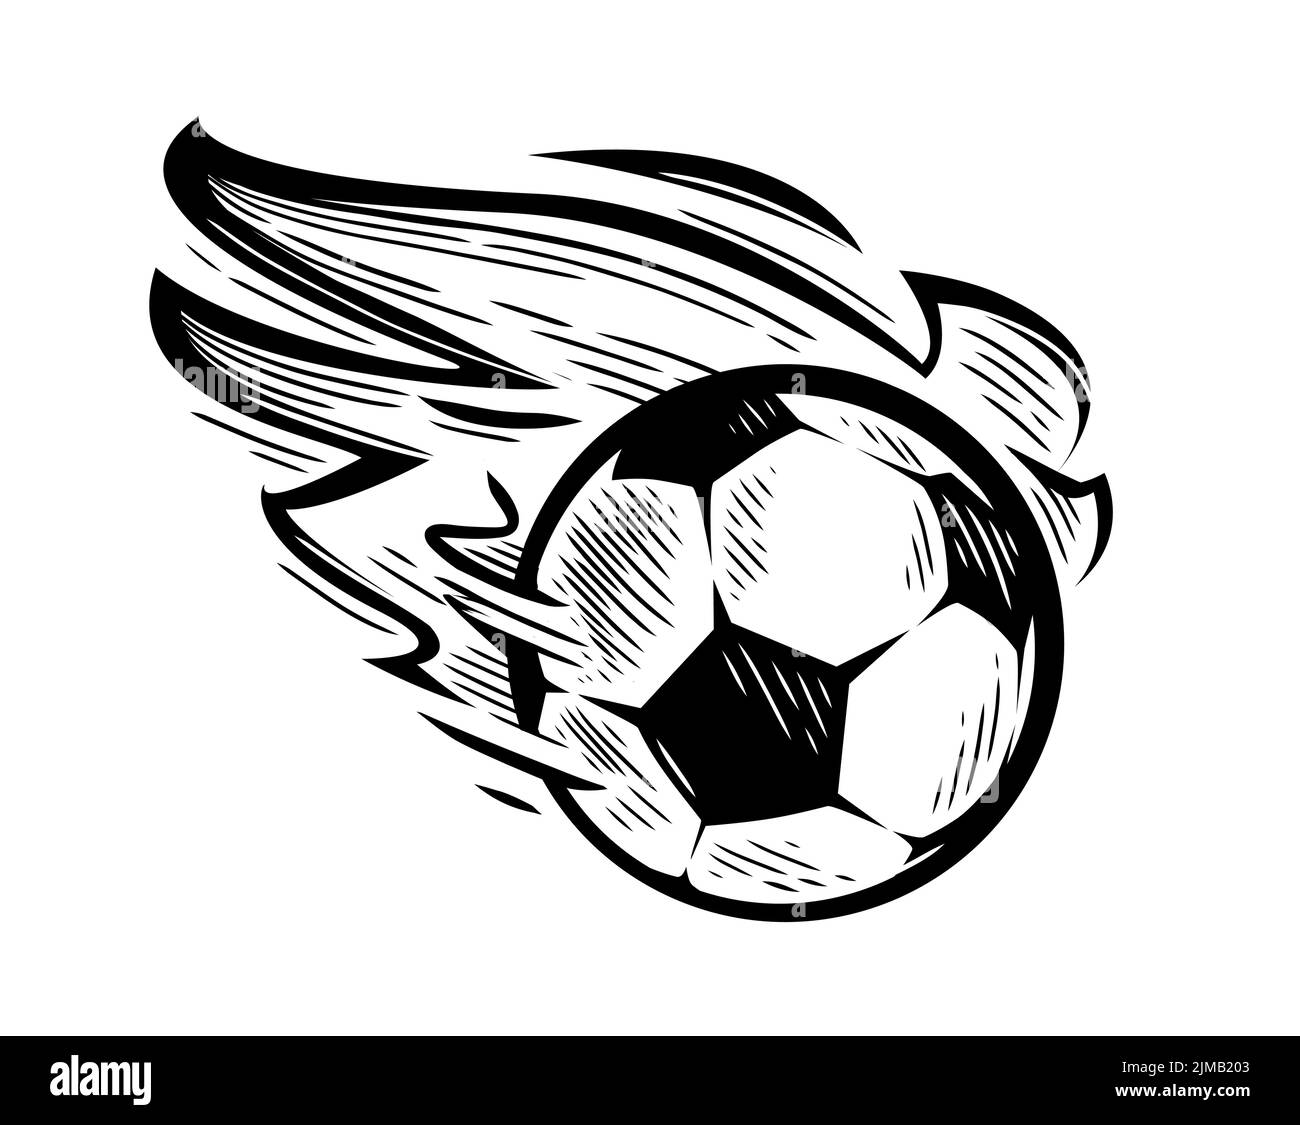 Soccer ball burning flying emblem. Hand drawn football and soccer symbol. Vector sketch illustration Stock Vector